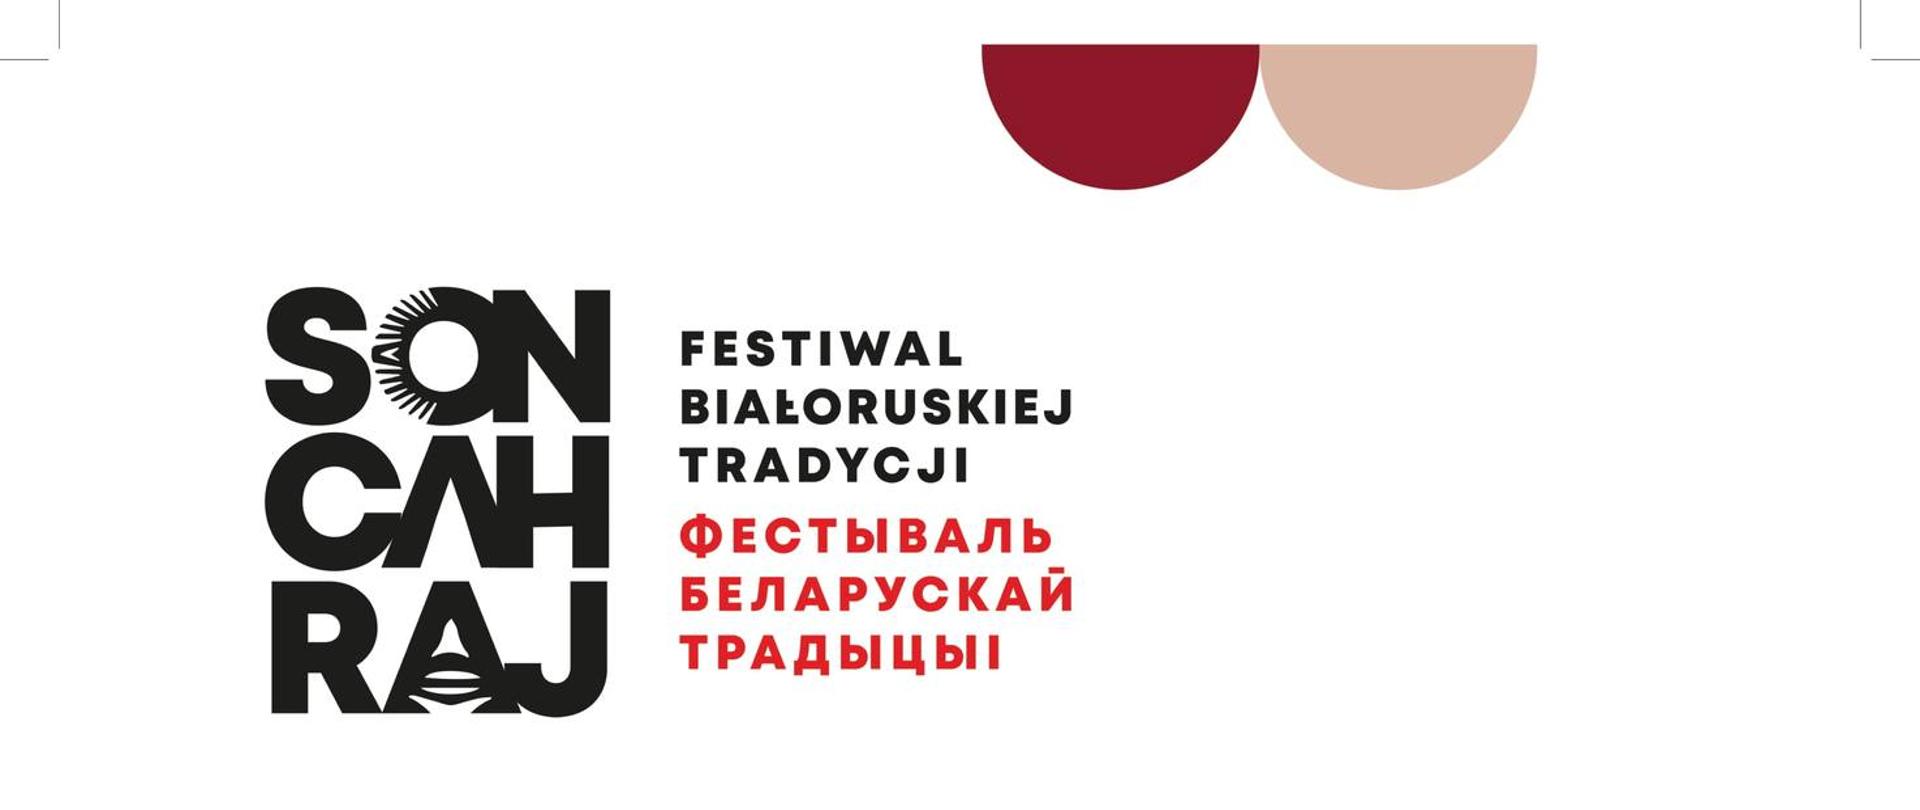 Plakat imprezy: na białym tle futurystyczny wzór geometryczny w kolorze czerwonym wraz z napisami organizacyjnymi (termin, nazwa imprezy, patronaty)